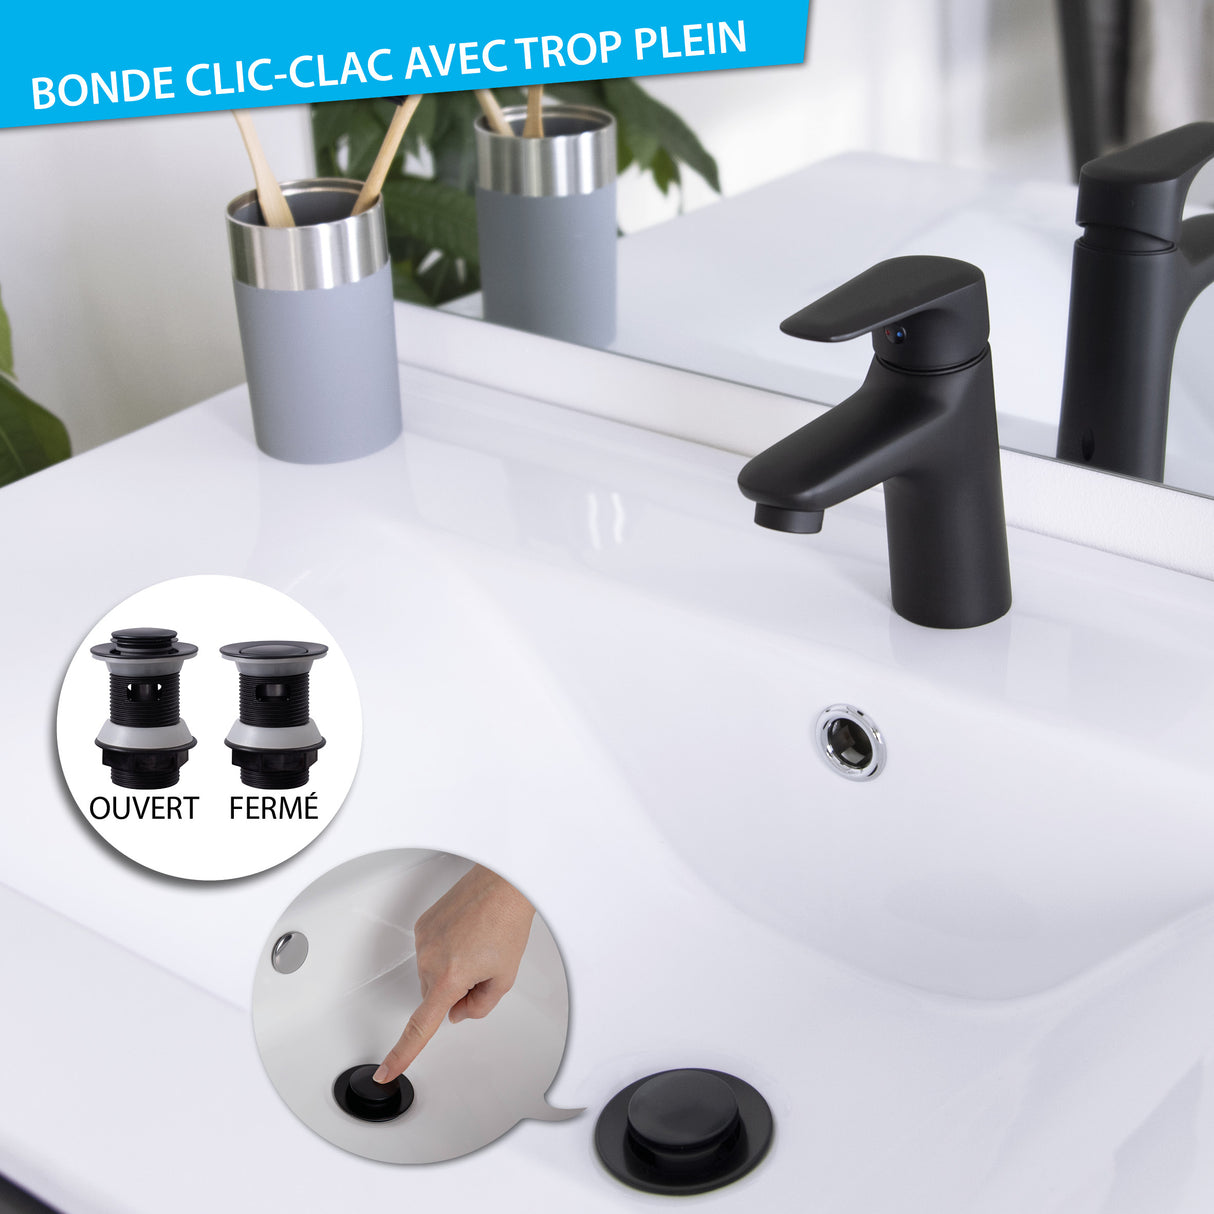 Siphon Bonde Clic clac pour baignoire